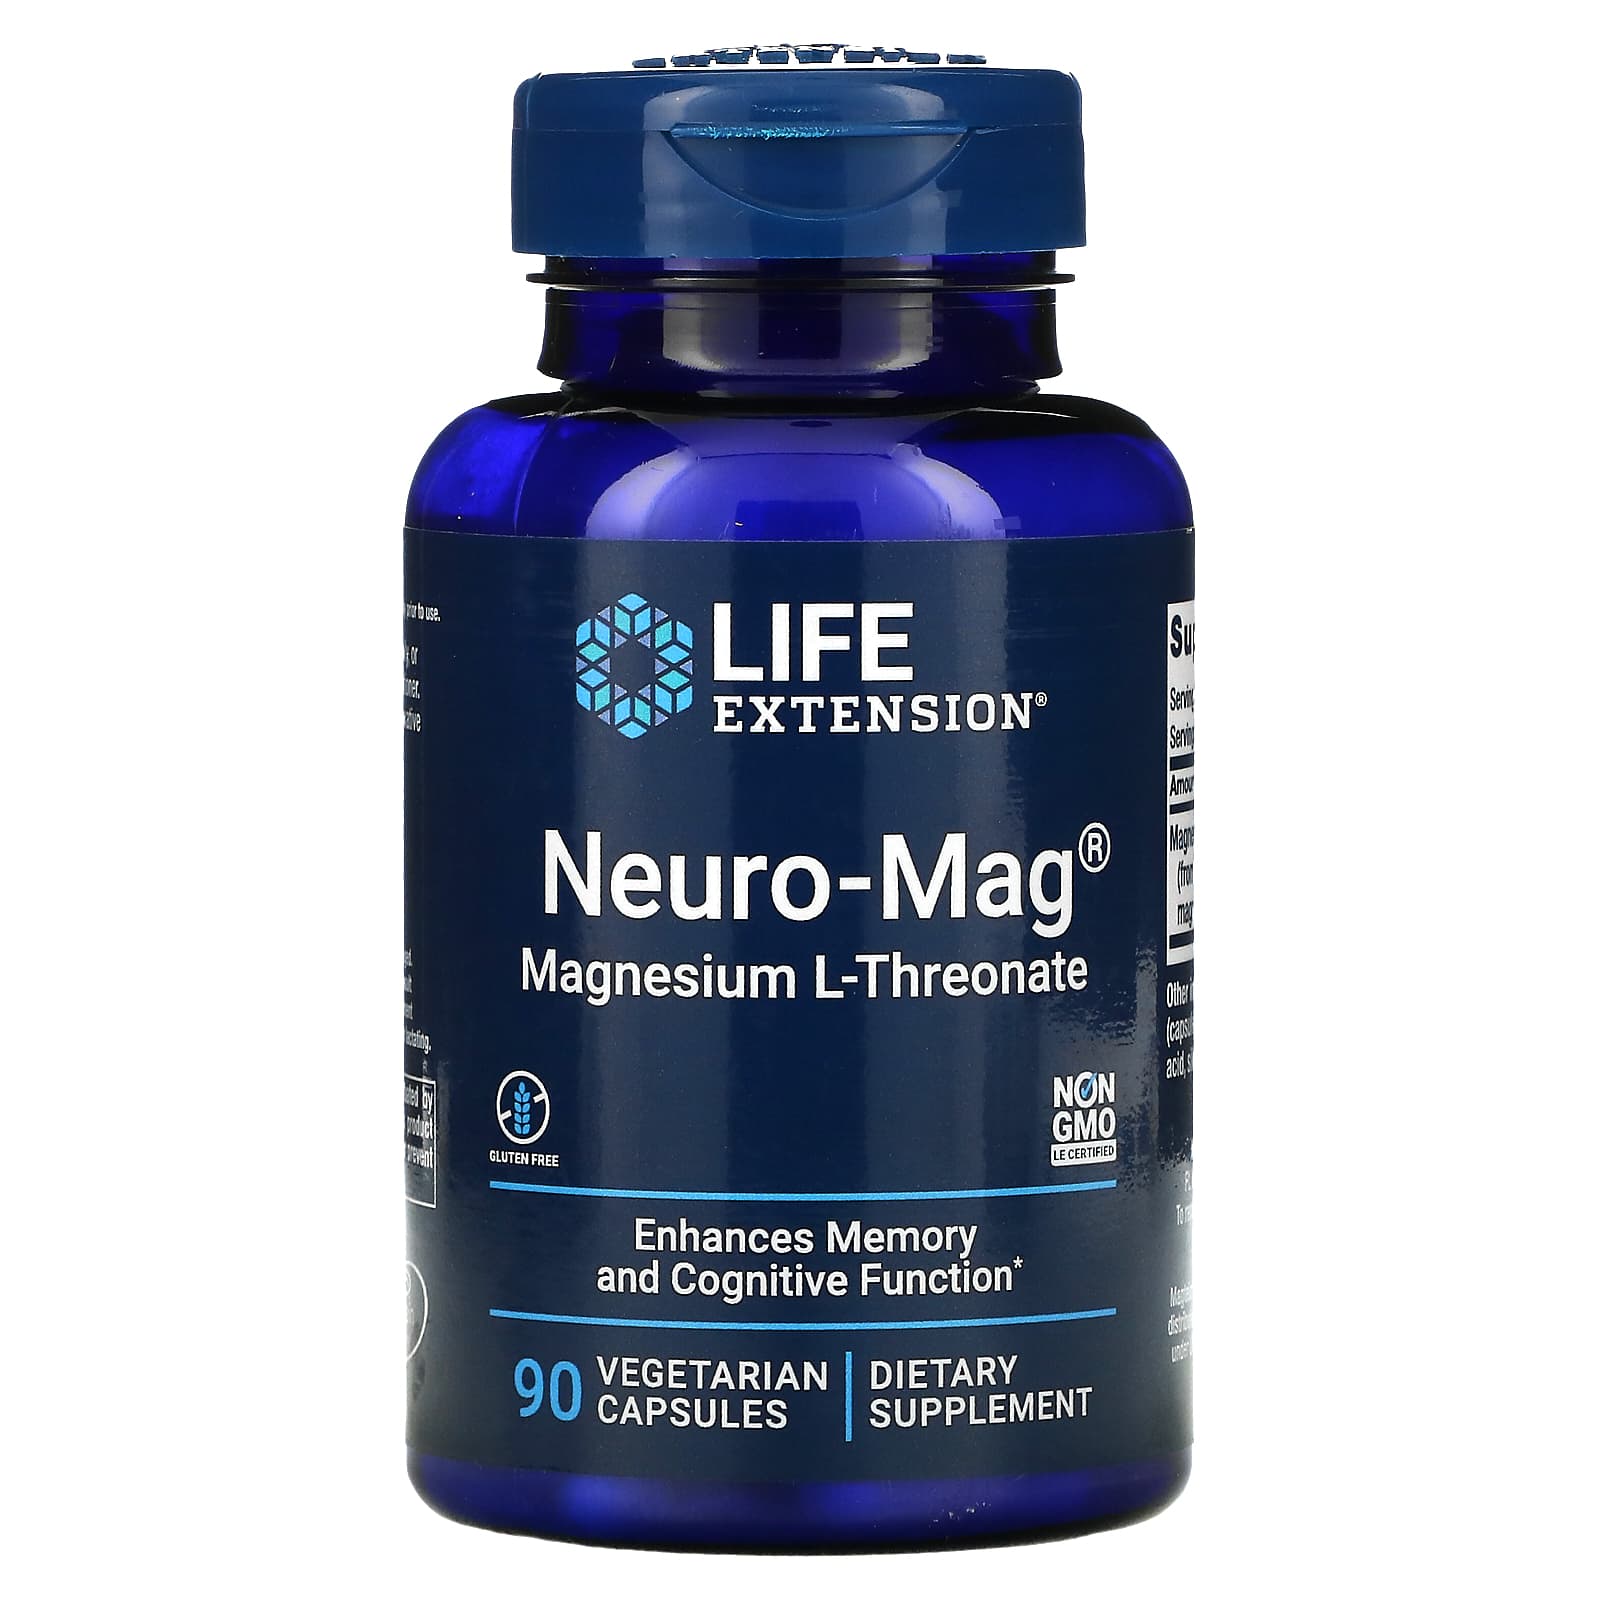 Life Extension Neuro-Mag Magnesium L-Threonate, 90 Vegetarian Capsules